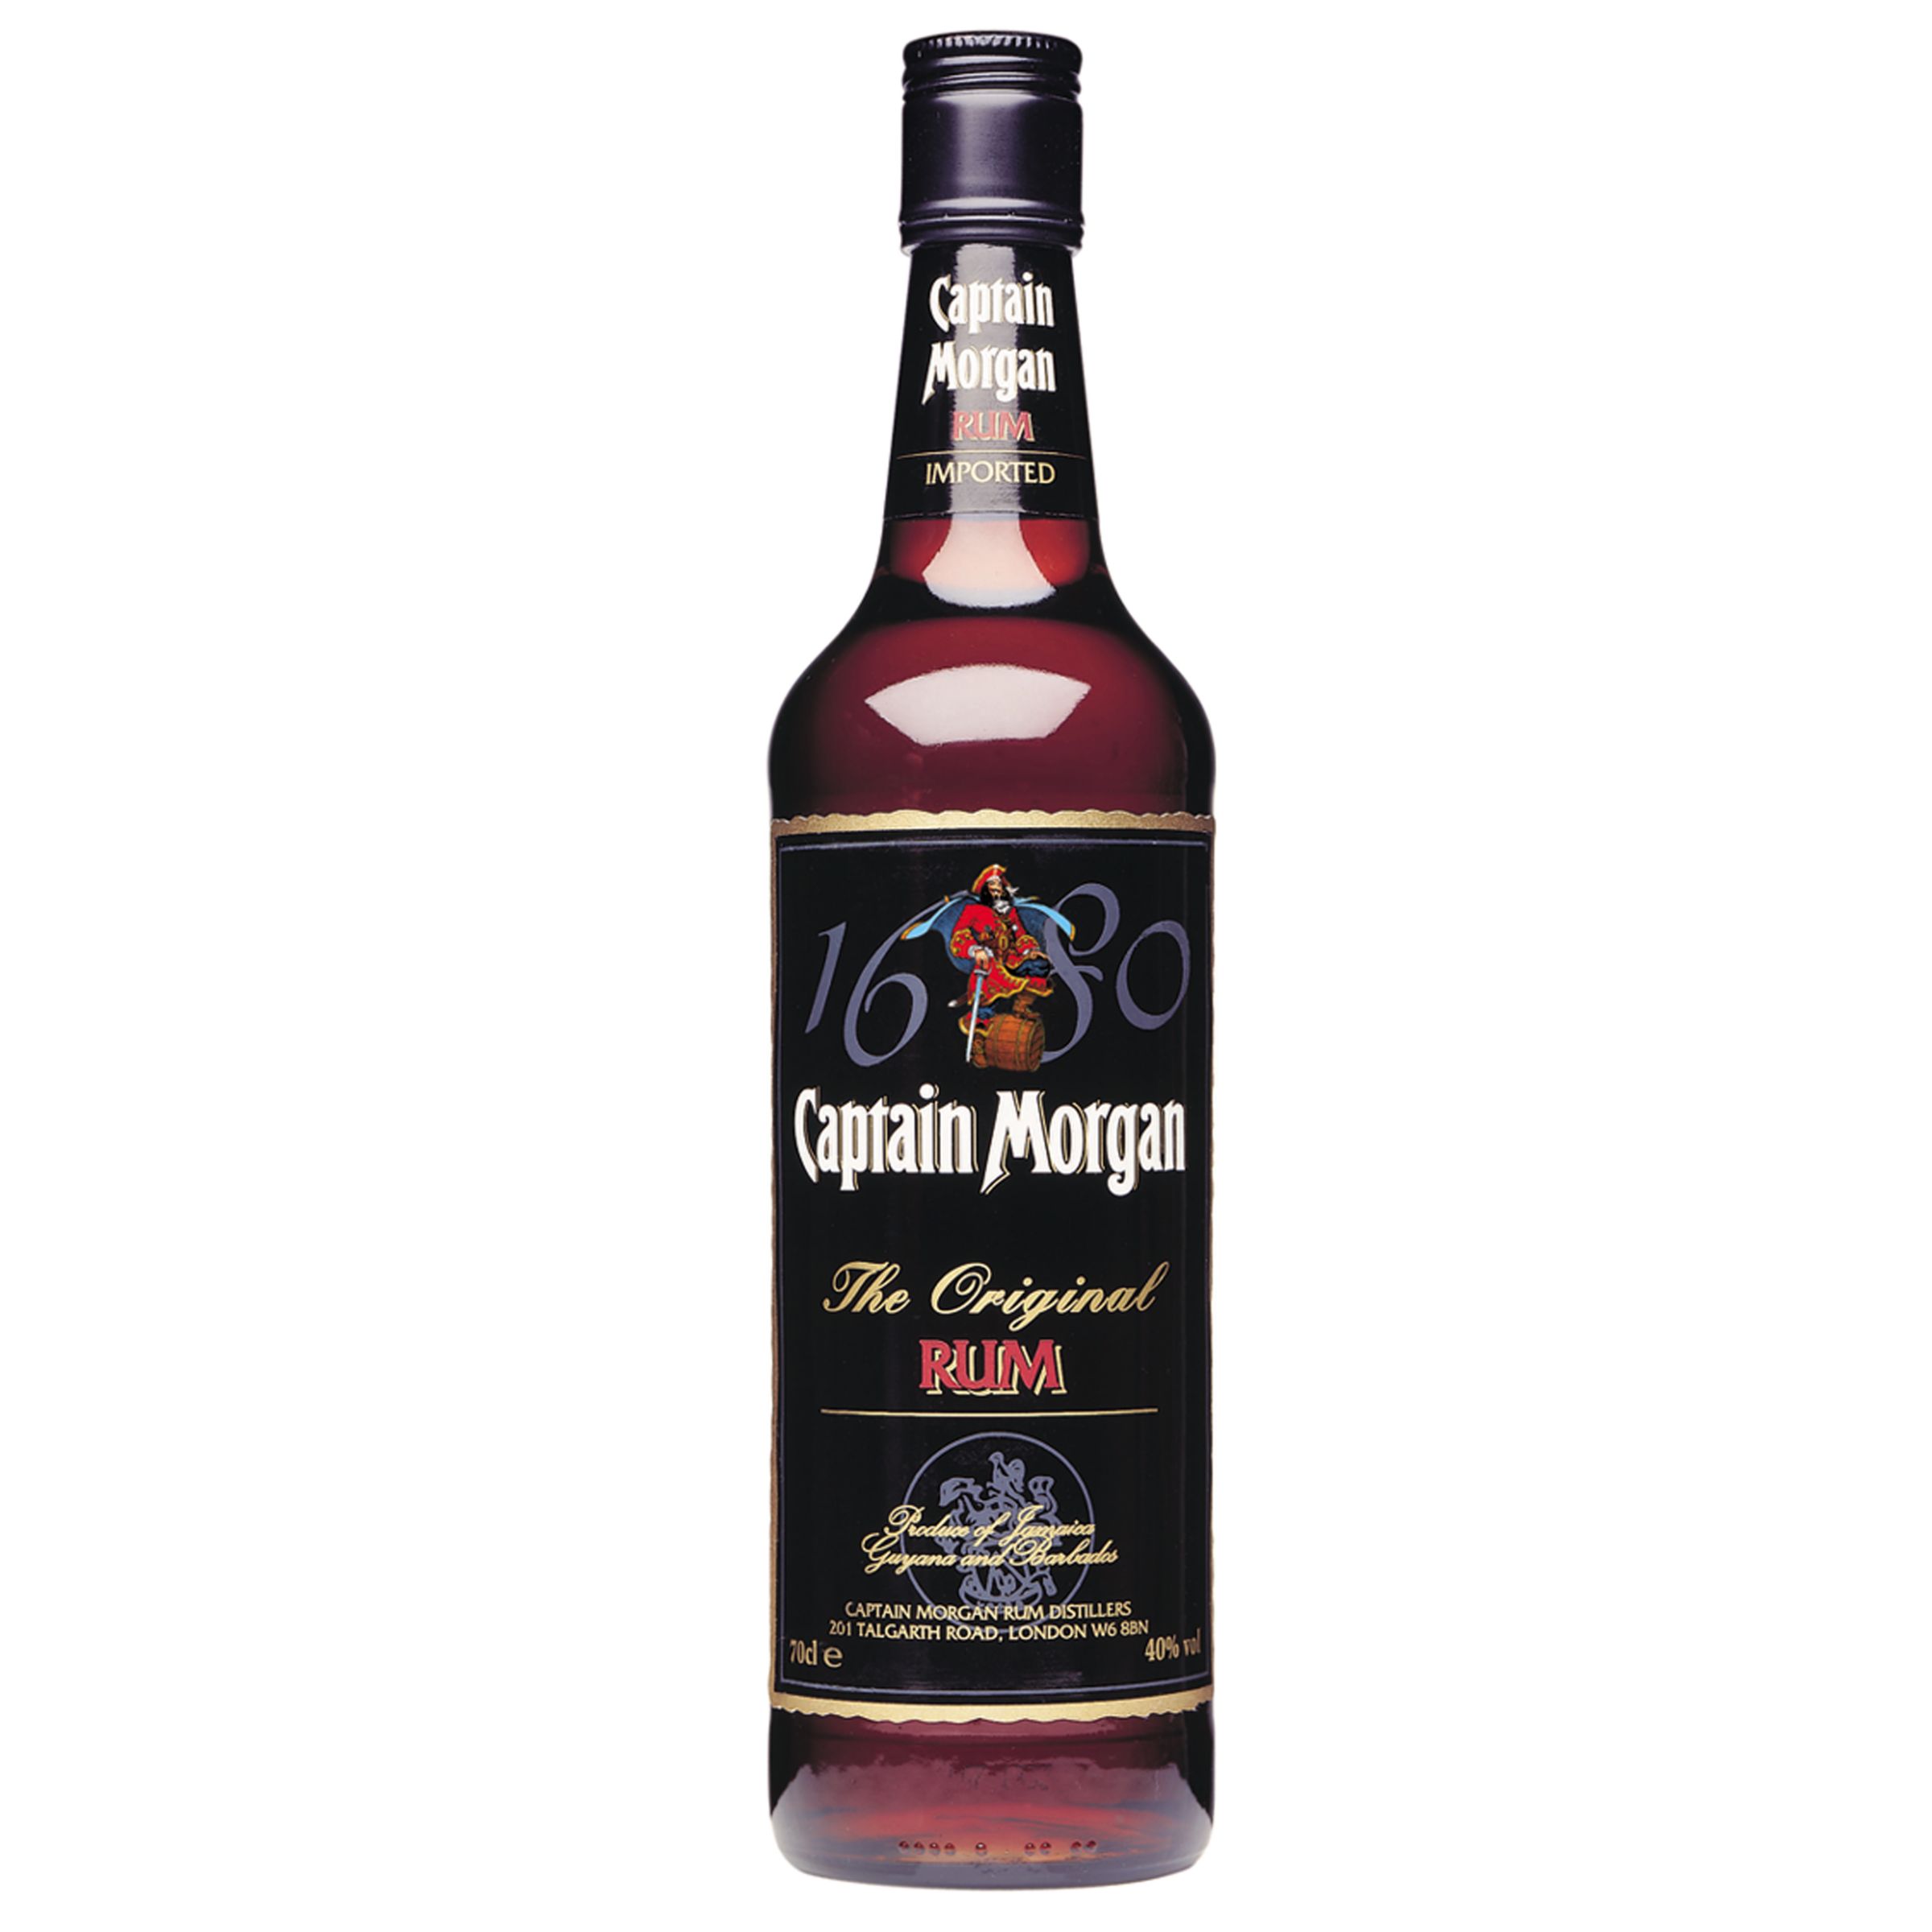 Captain Morgan Original Rum at John Lewis